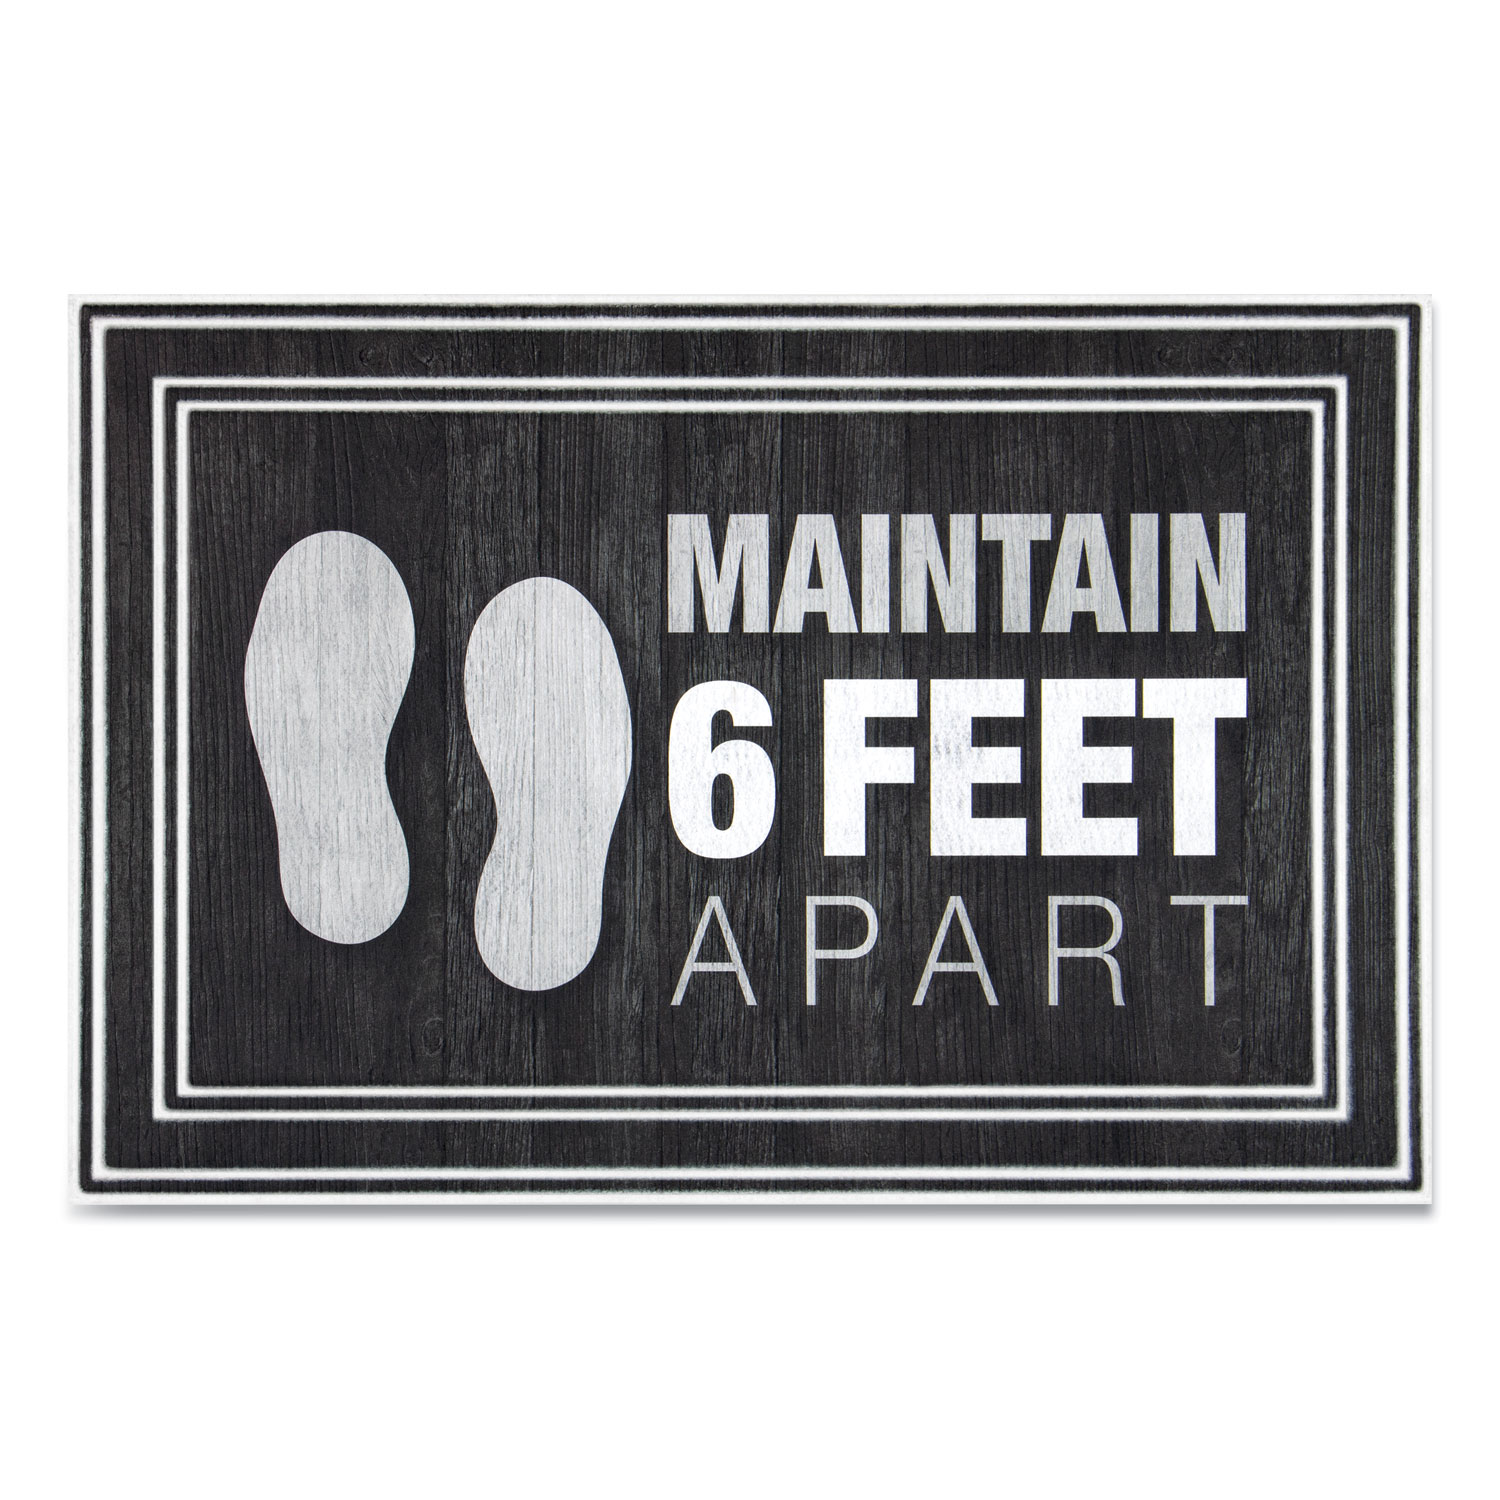 Apache Mills® Message Floor Mats, 24 x 36, Charcoal, Maintain 6 Feet Apart